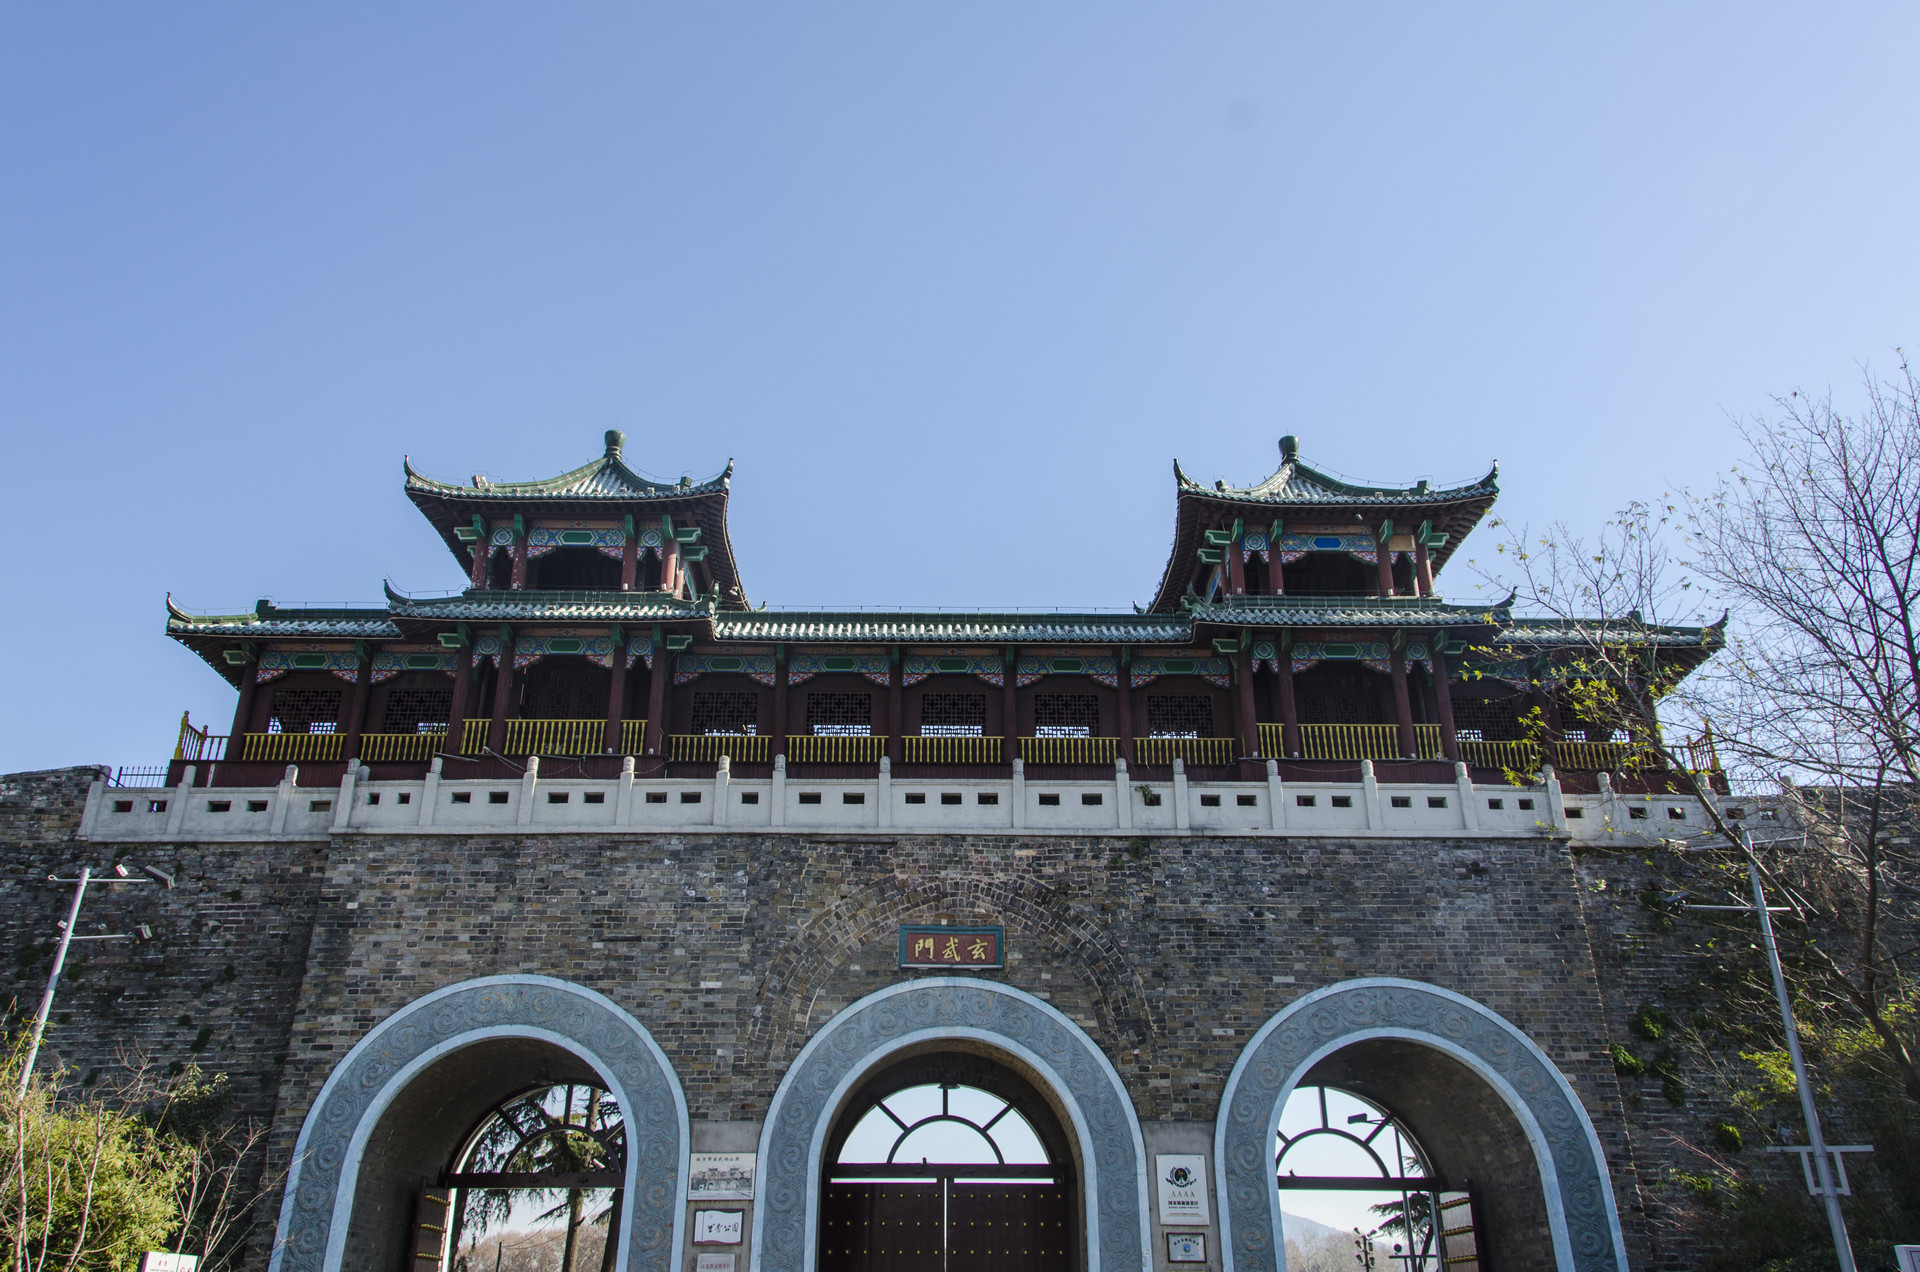 中华门原名聚宝门,是南京城的南门,这里保留有全国最大的瓮城,距离老